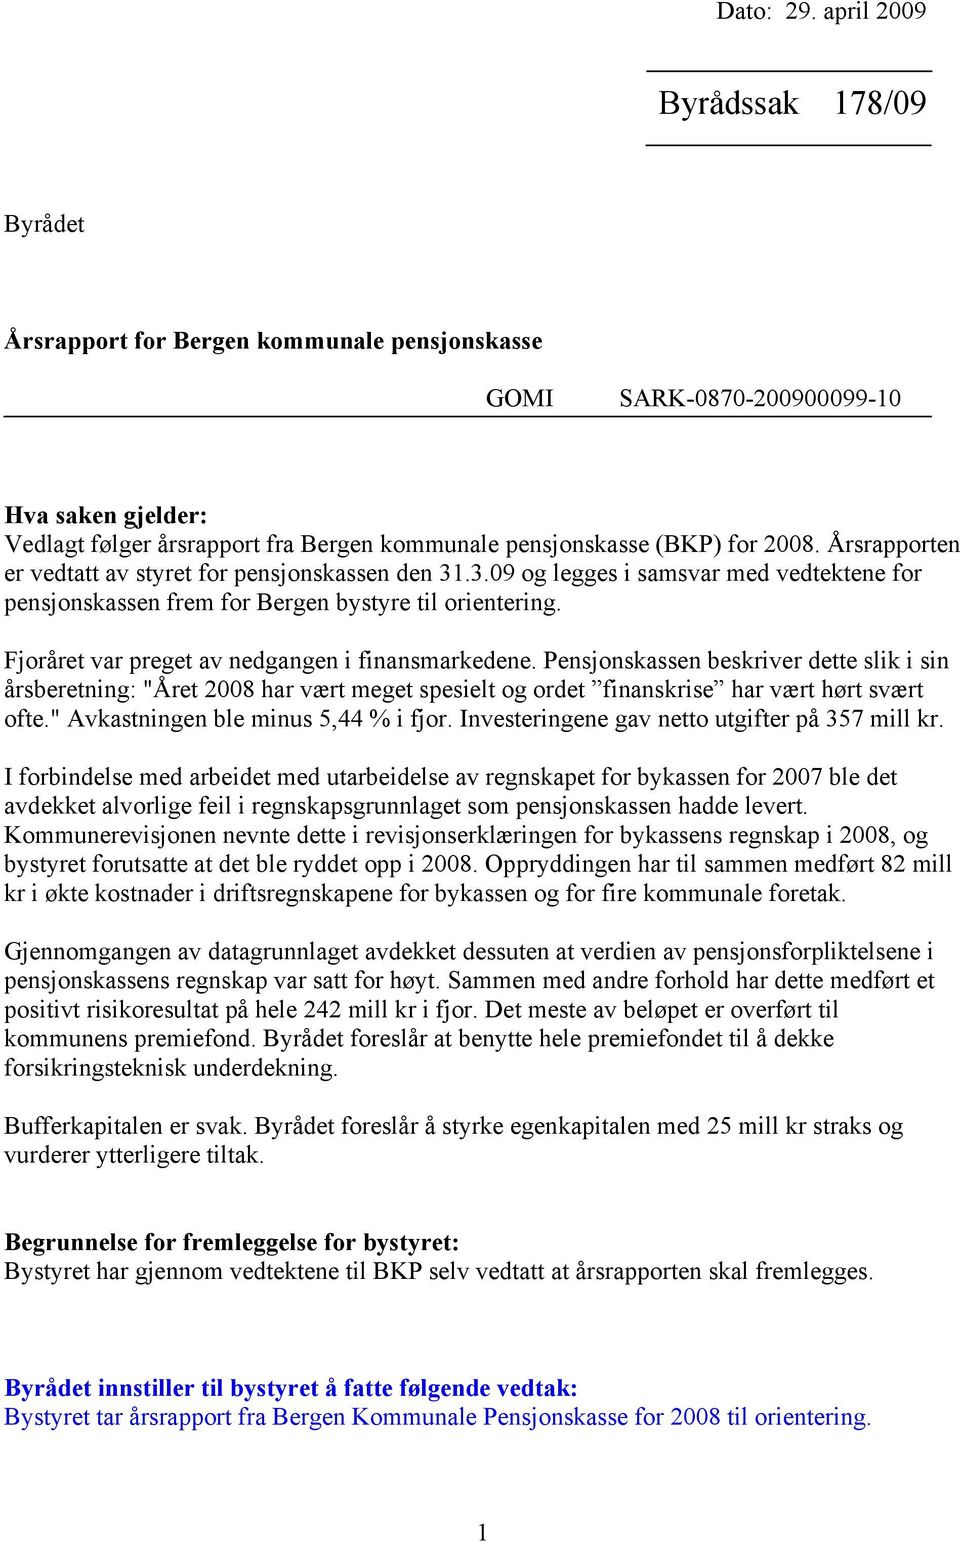 2008. Årsrapporten er vedtatt av styret for pensjonskassen den 31.3.09 og legges i samsvar med vedtektene for pensjonskassen frem for Bergen bystyre til orientering.